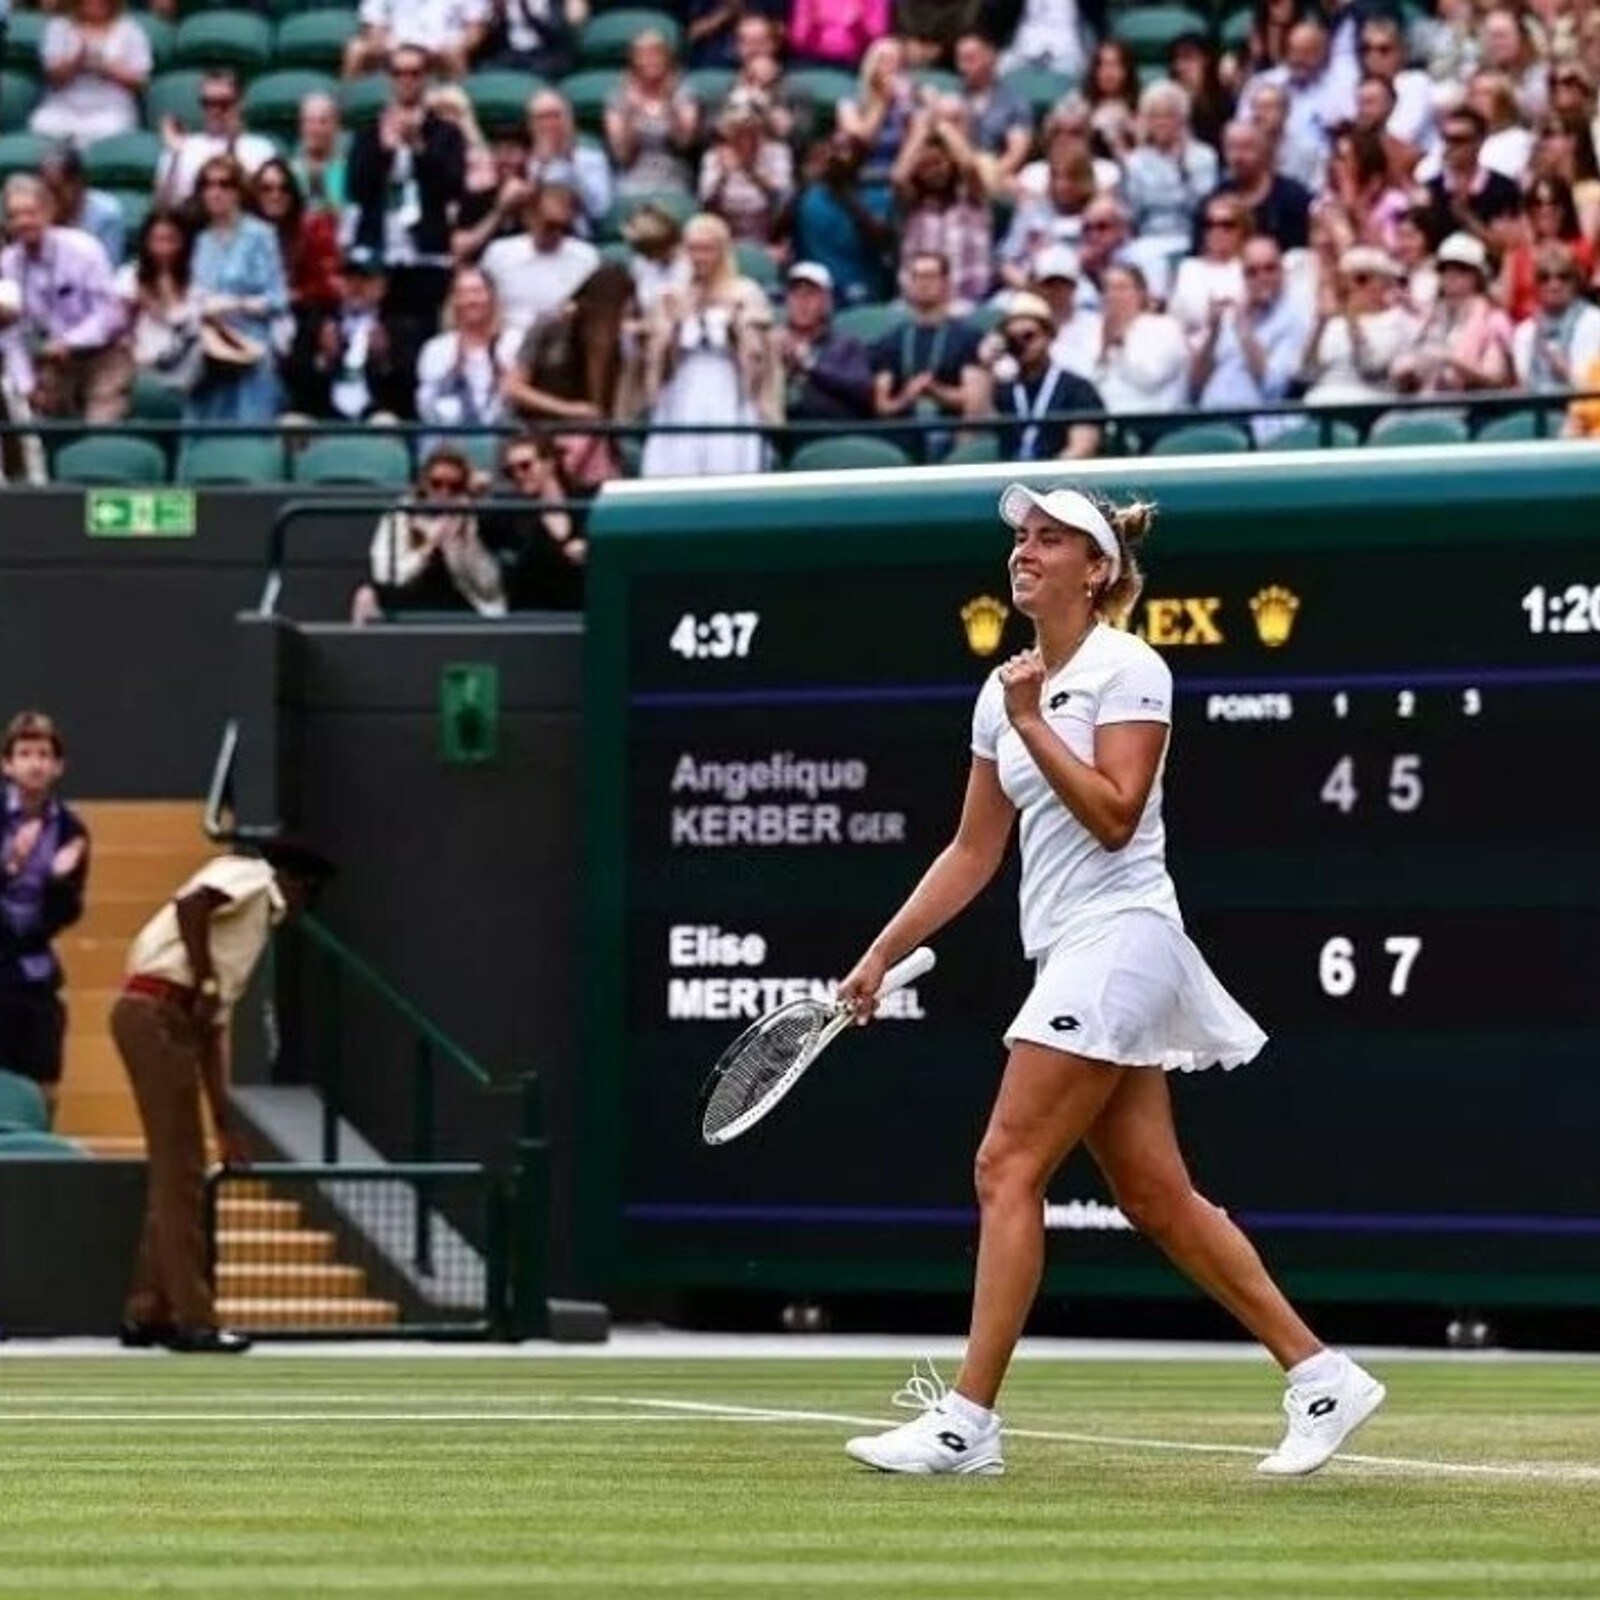 Wimbledon 2022 Elise Mertens Beats Former Champion Angelique Kerber to Reach Last 16